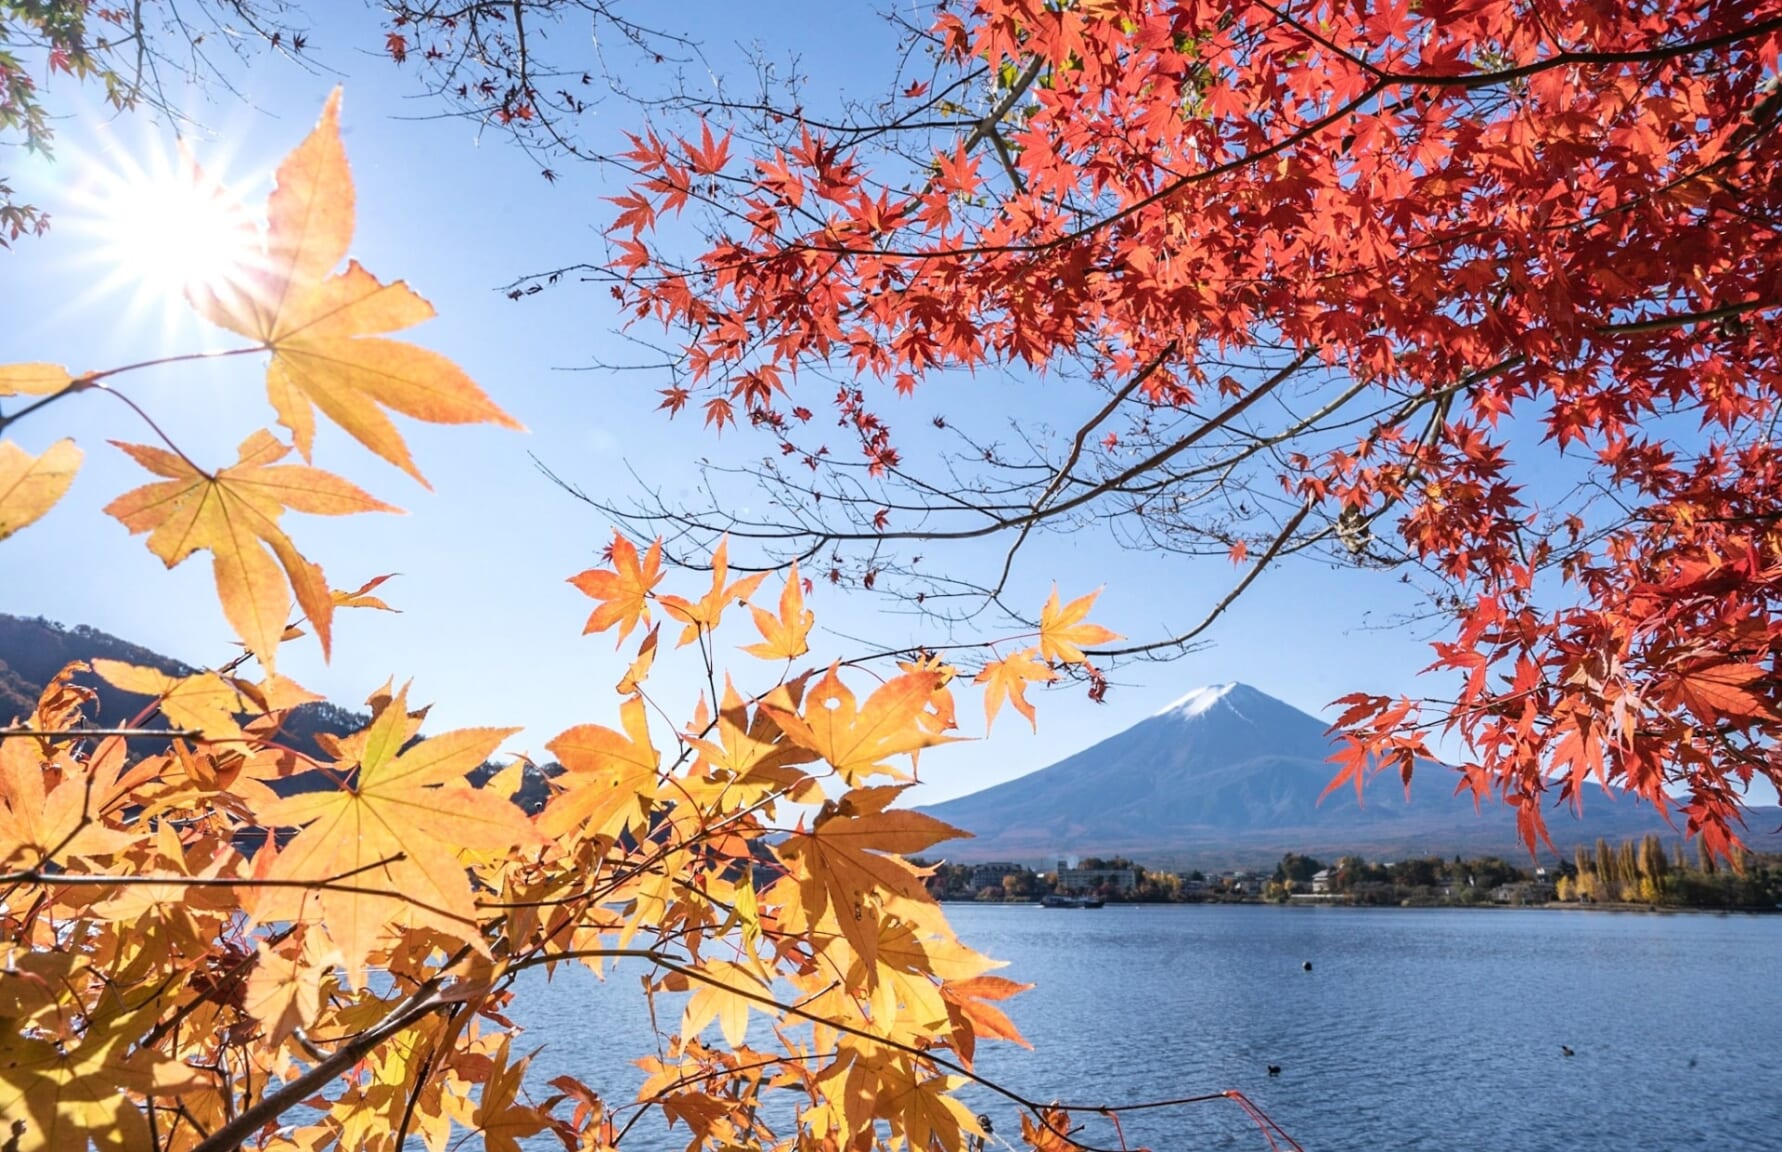 Mt. Fuji from Kawaguchiko lake in autumnm